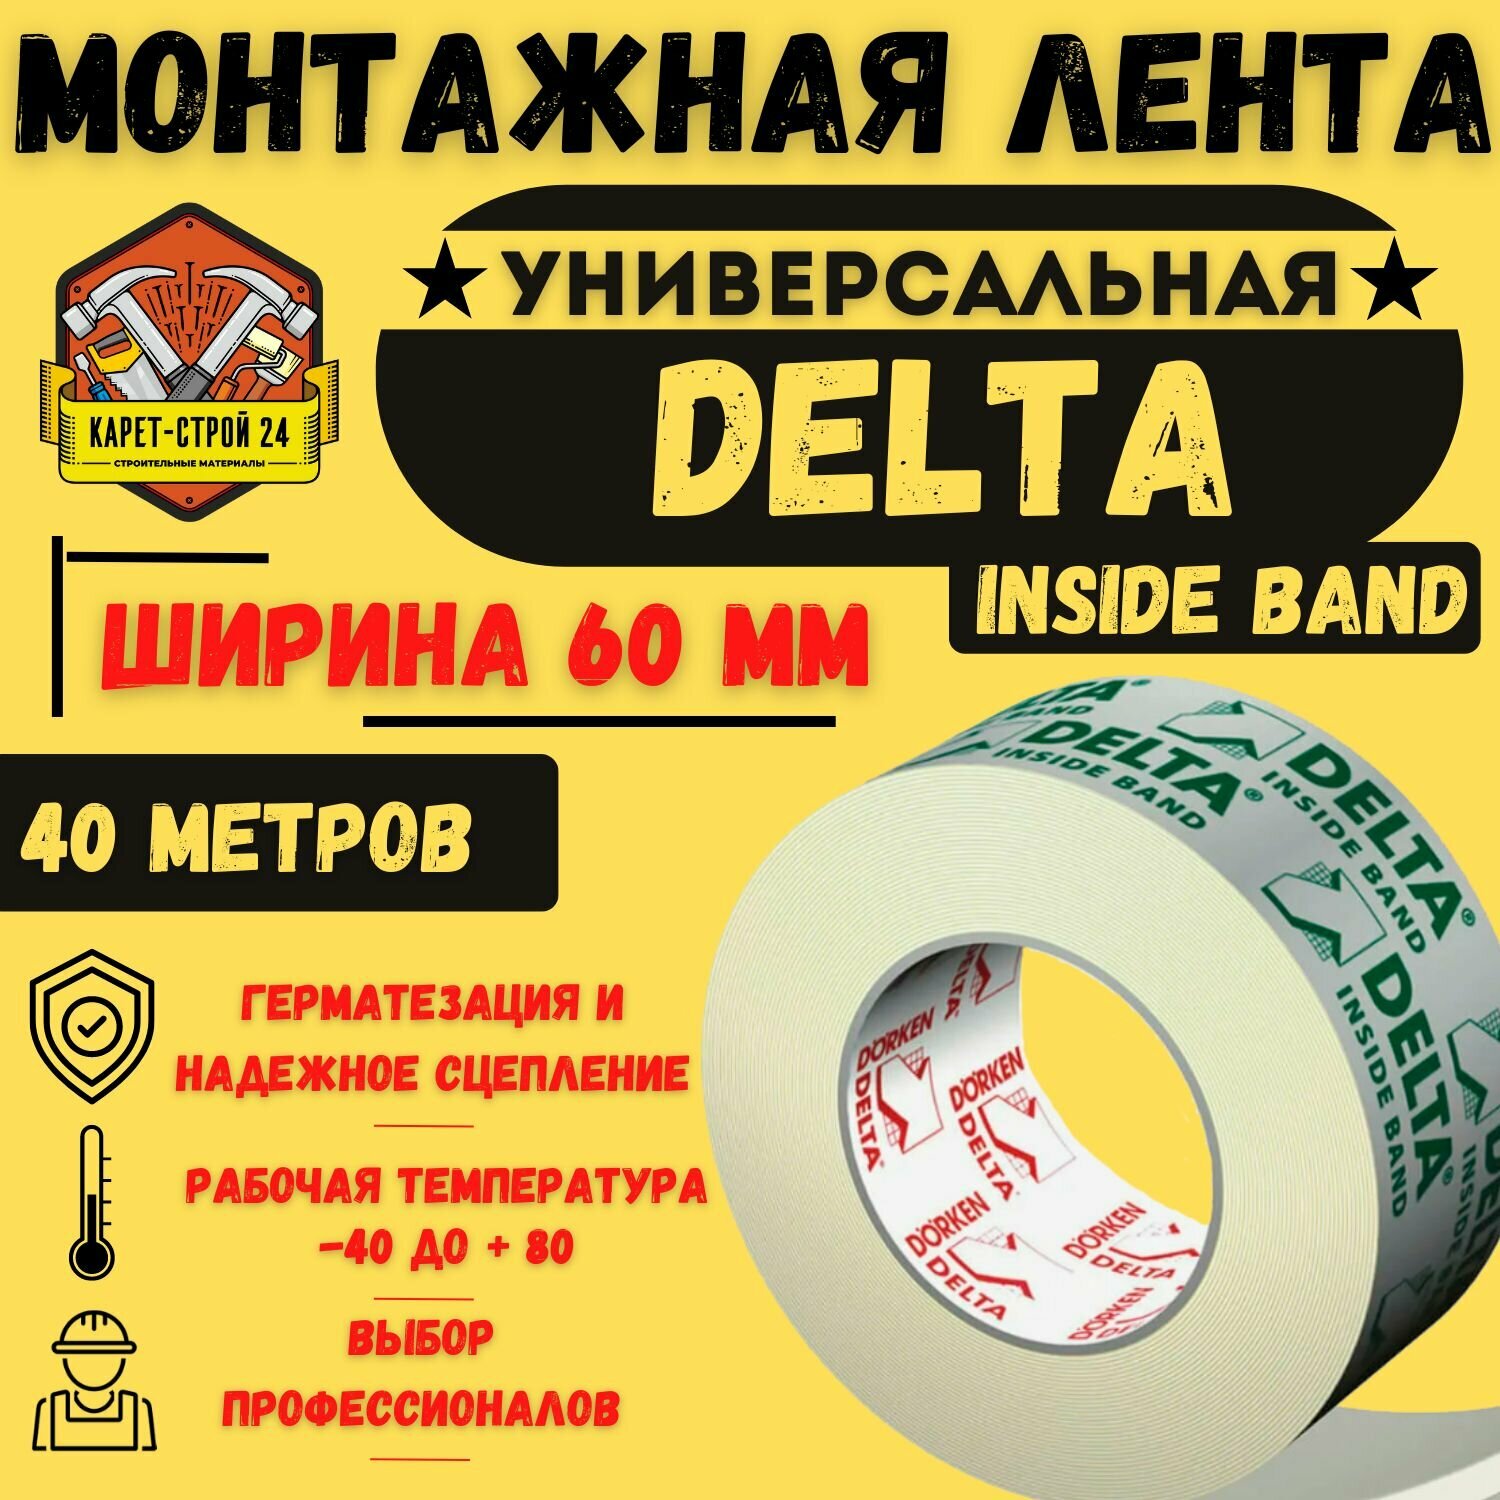 Клеящая лента DELTA INSIDE Band M 60 40 м. пог